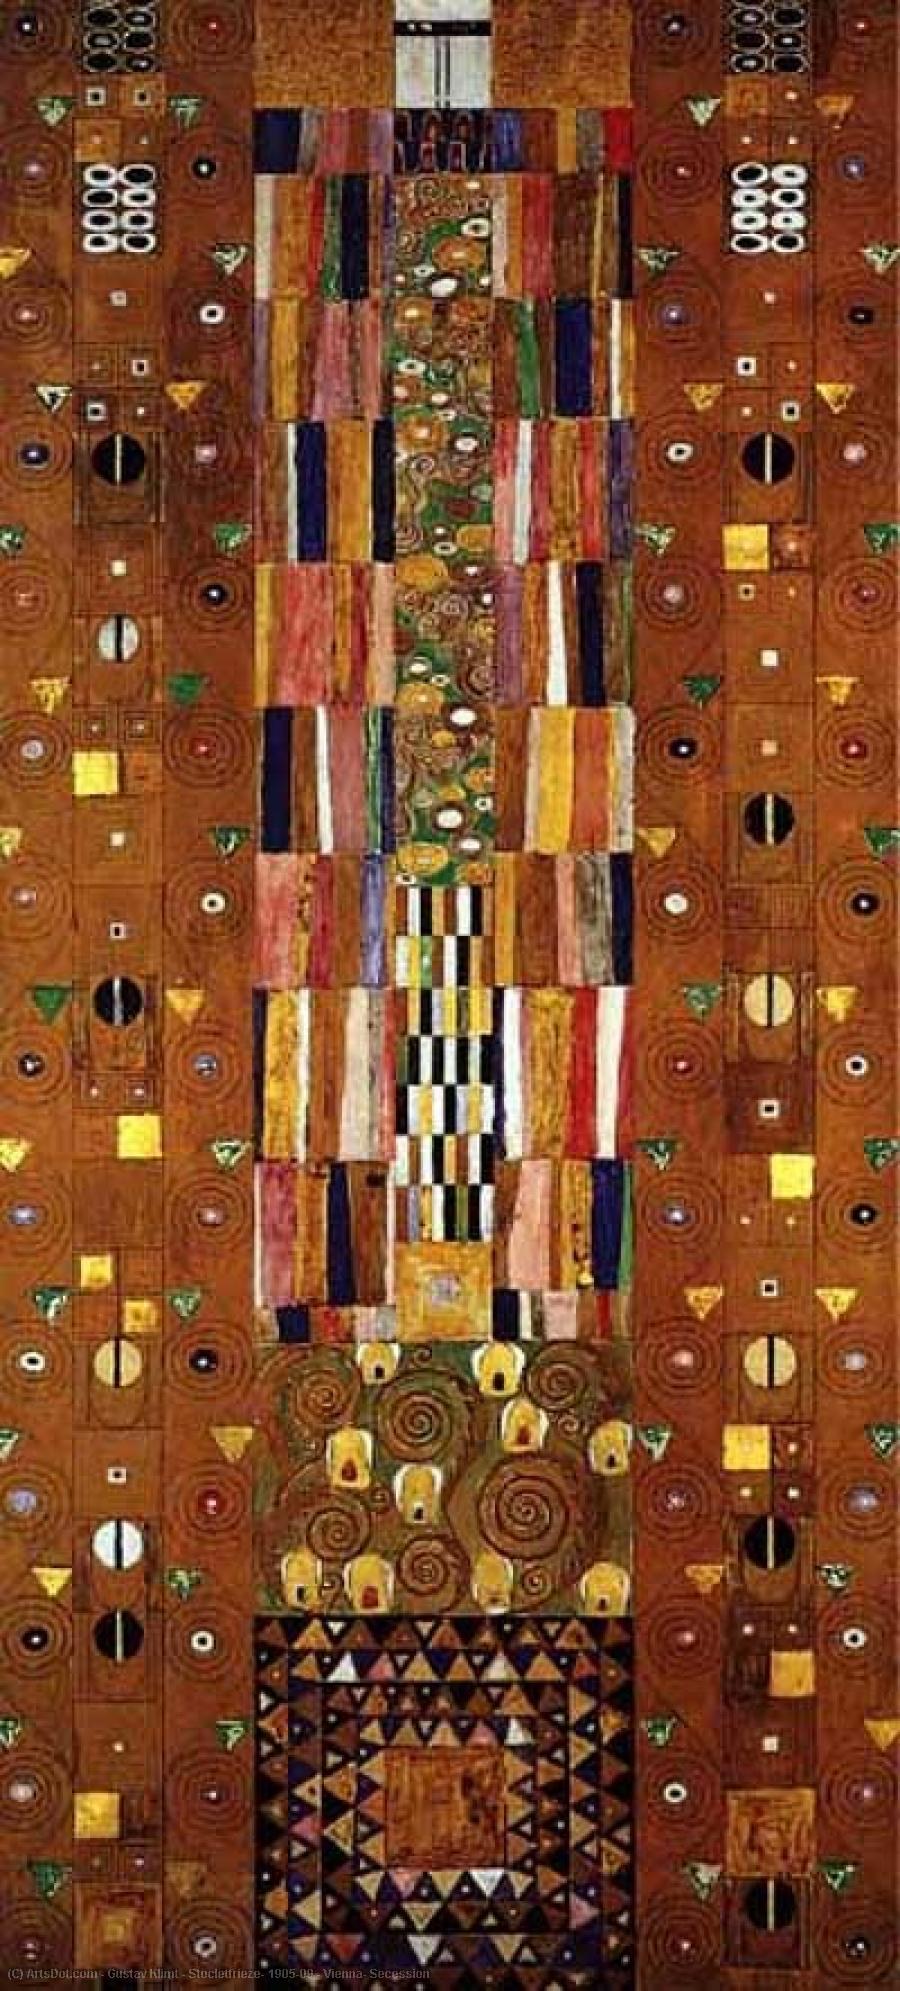 WikiOO.org - Enciklopedija dailės - Tapyba, meno kuriniai Gustav Klimt - Stocletfrieze, 1905-09 - Vienna, Secession